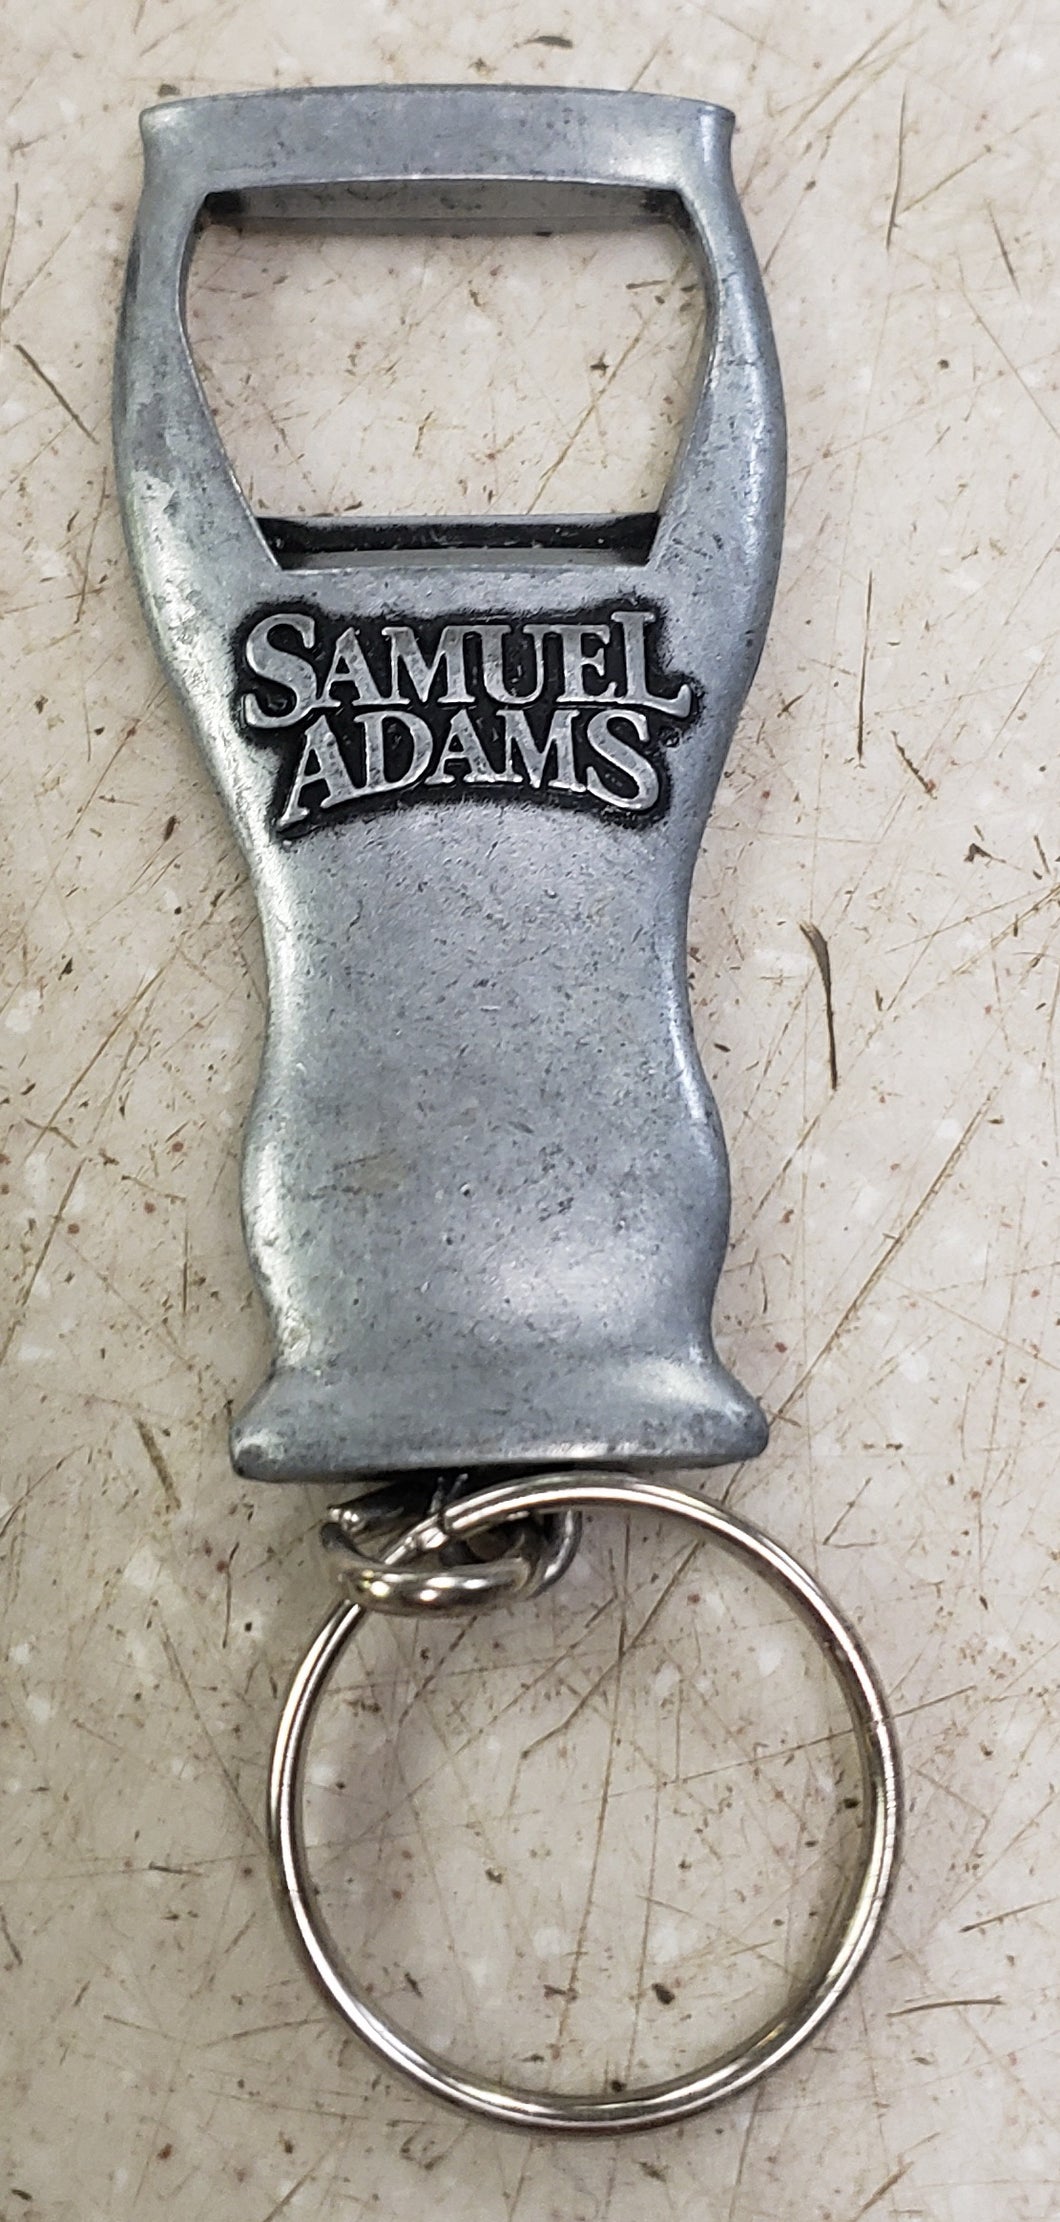 Samuel Adams Bottle Opener / Key Chain